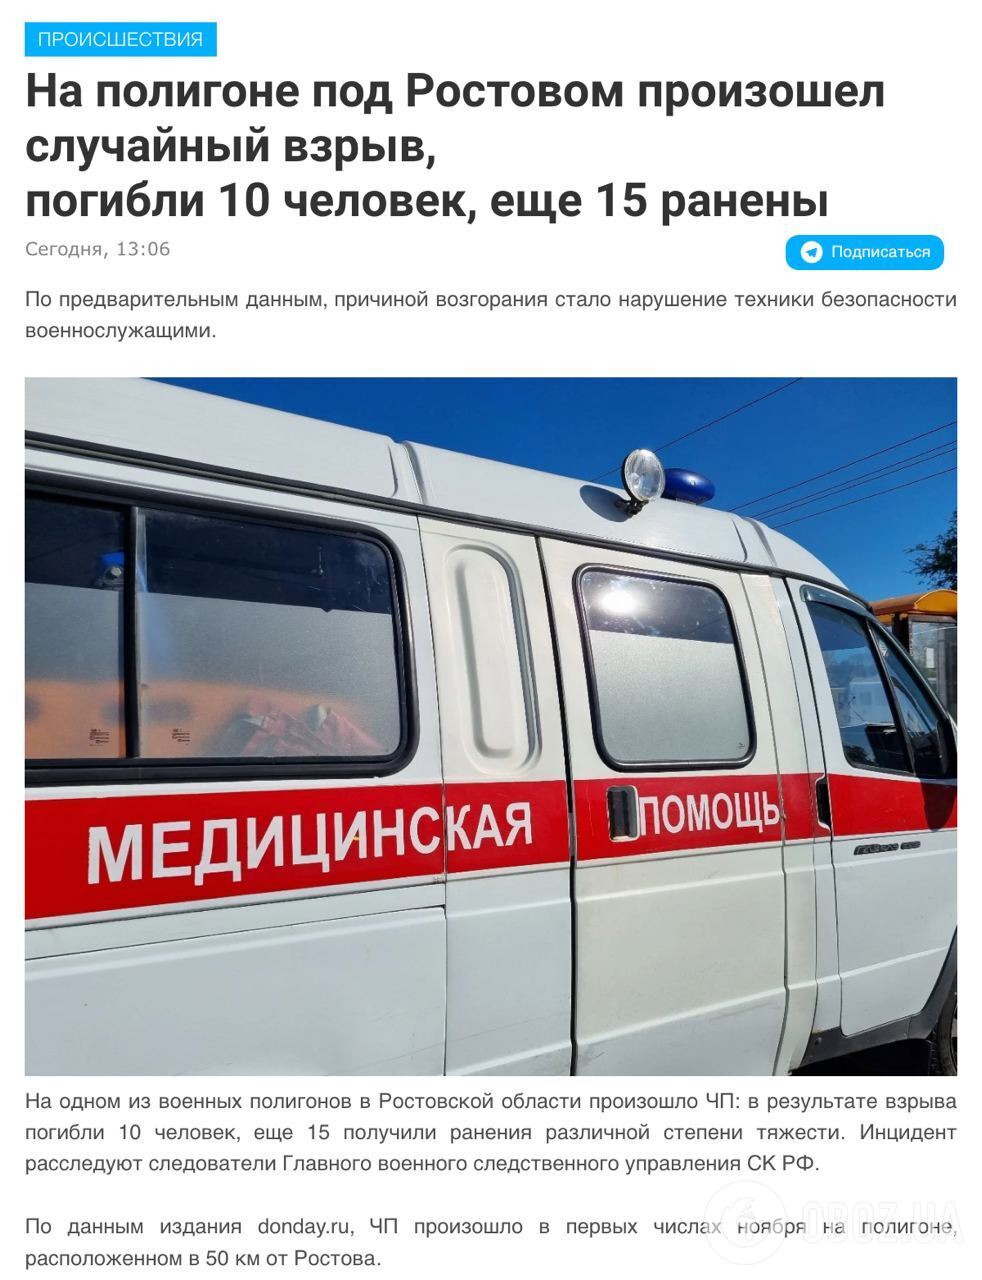 На військовому полігоні під Ростовом прогримів вибух: 10 людей загинули, 15 поранені